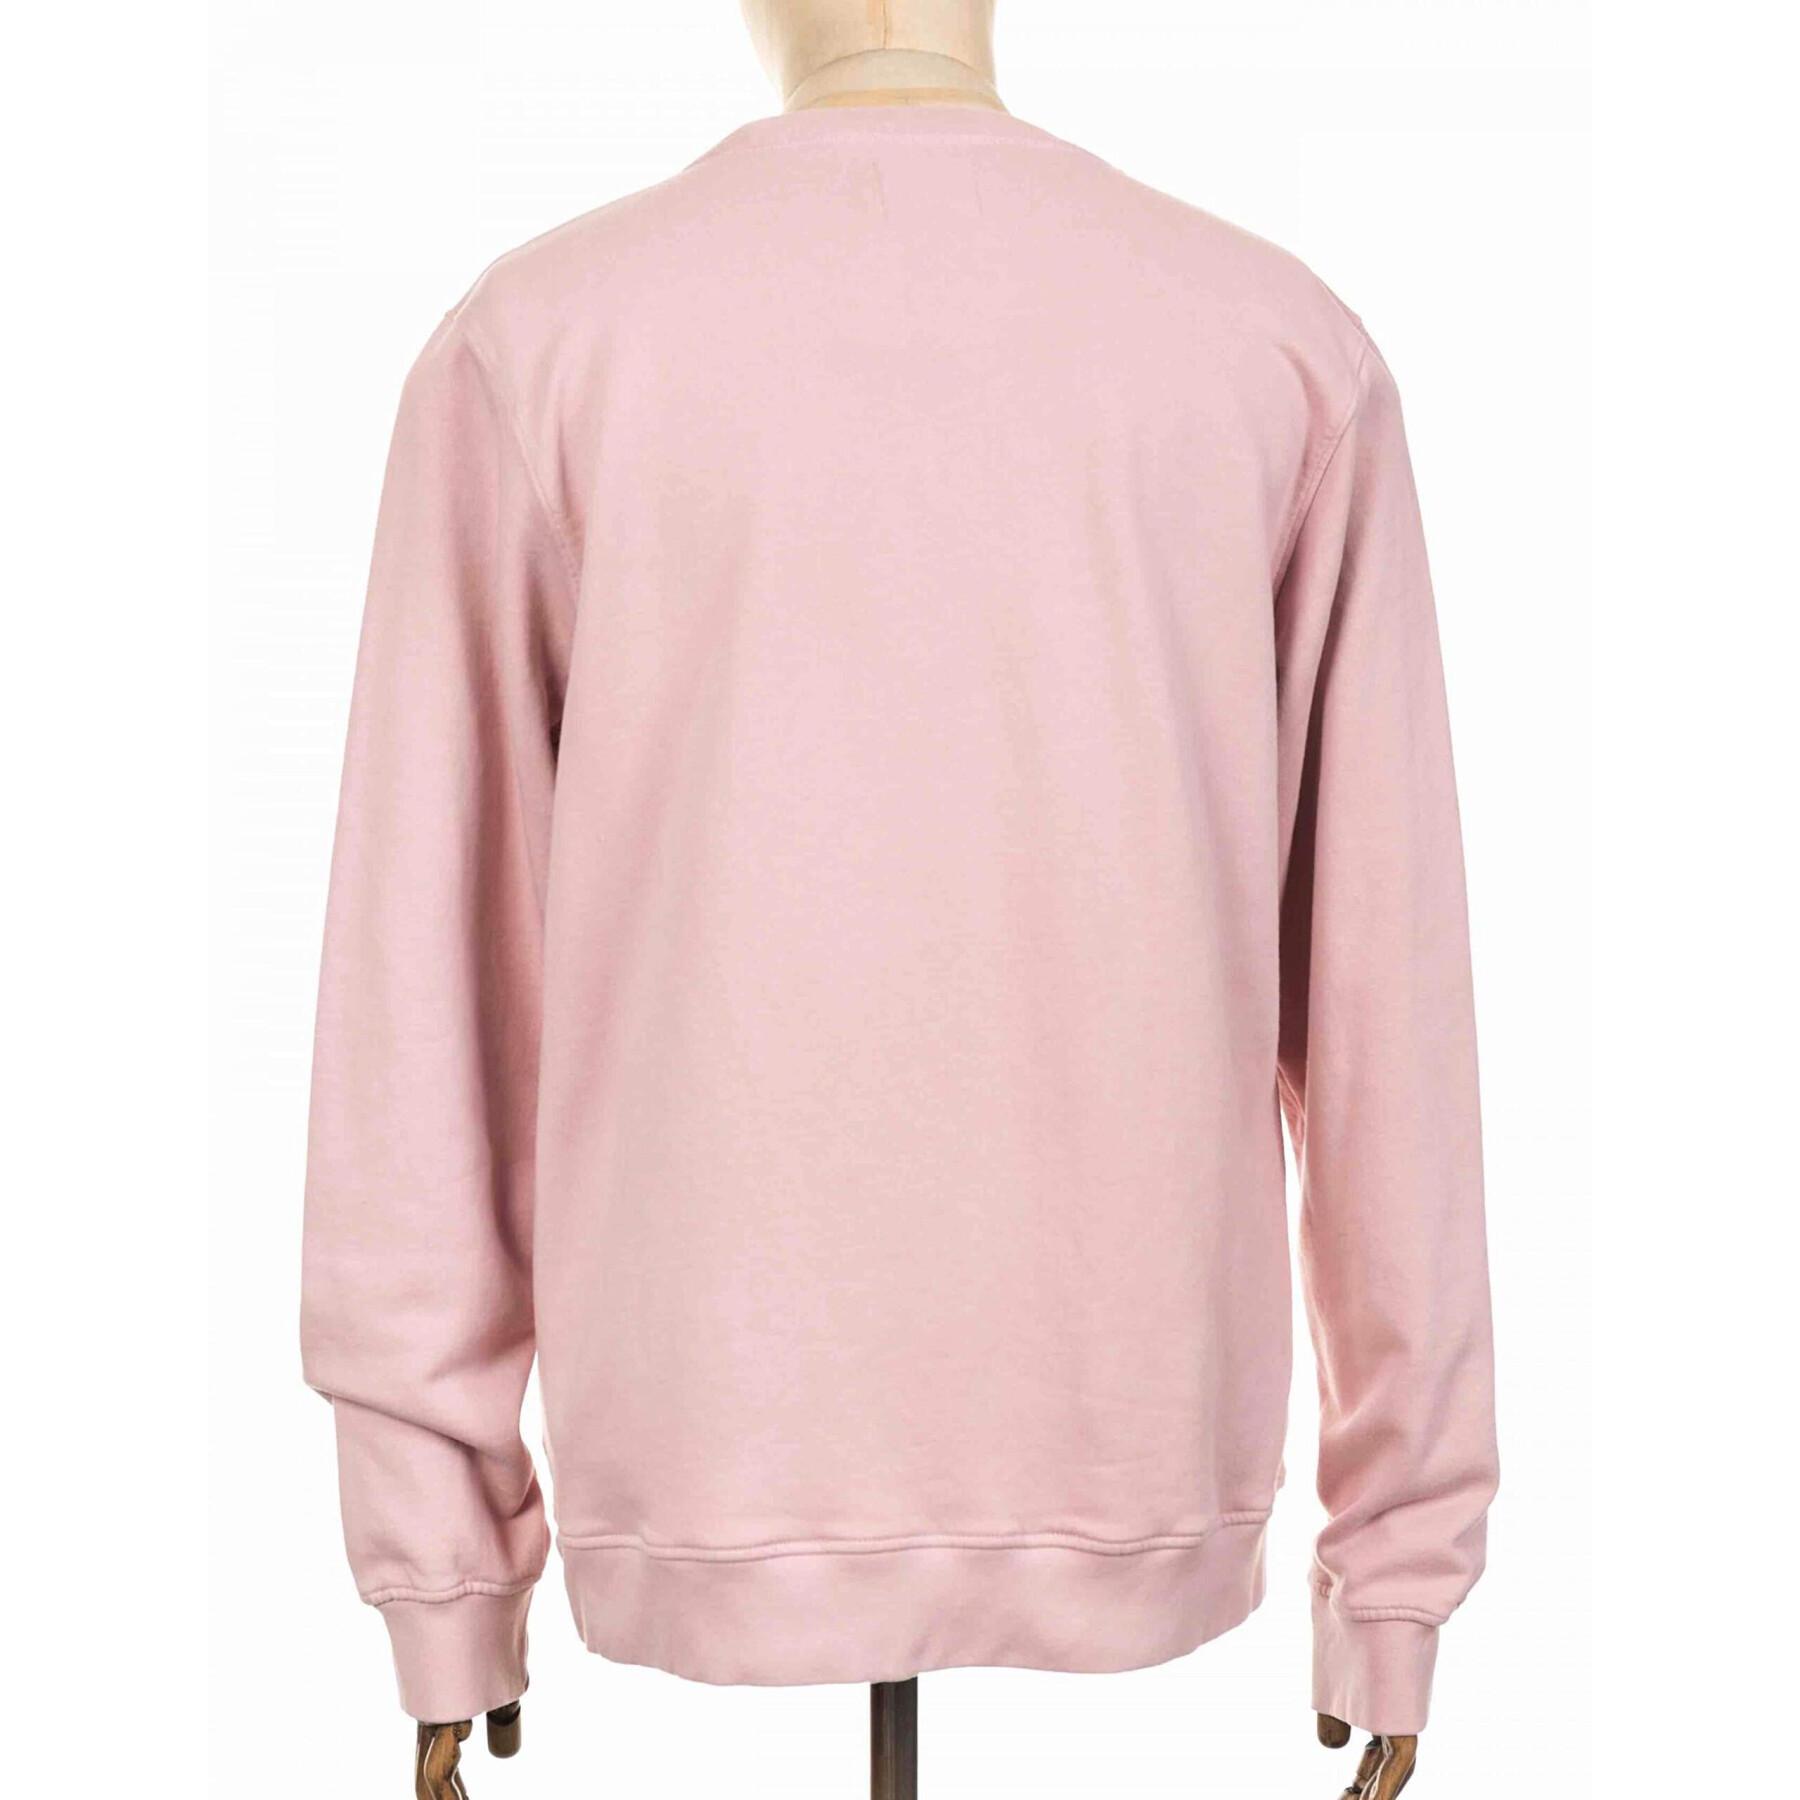 Bluza z okrągłym dekoltem Colorful Standard Classic Organic faded pink